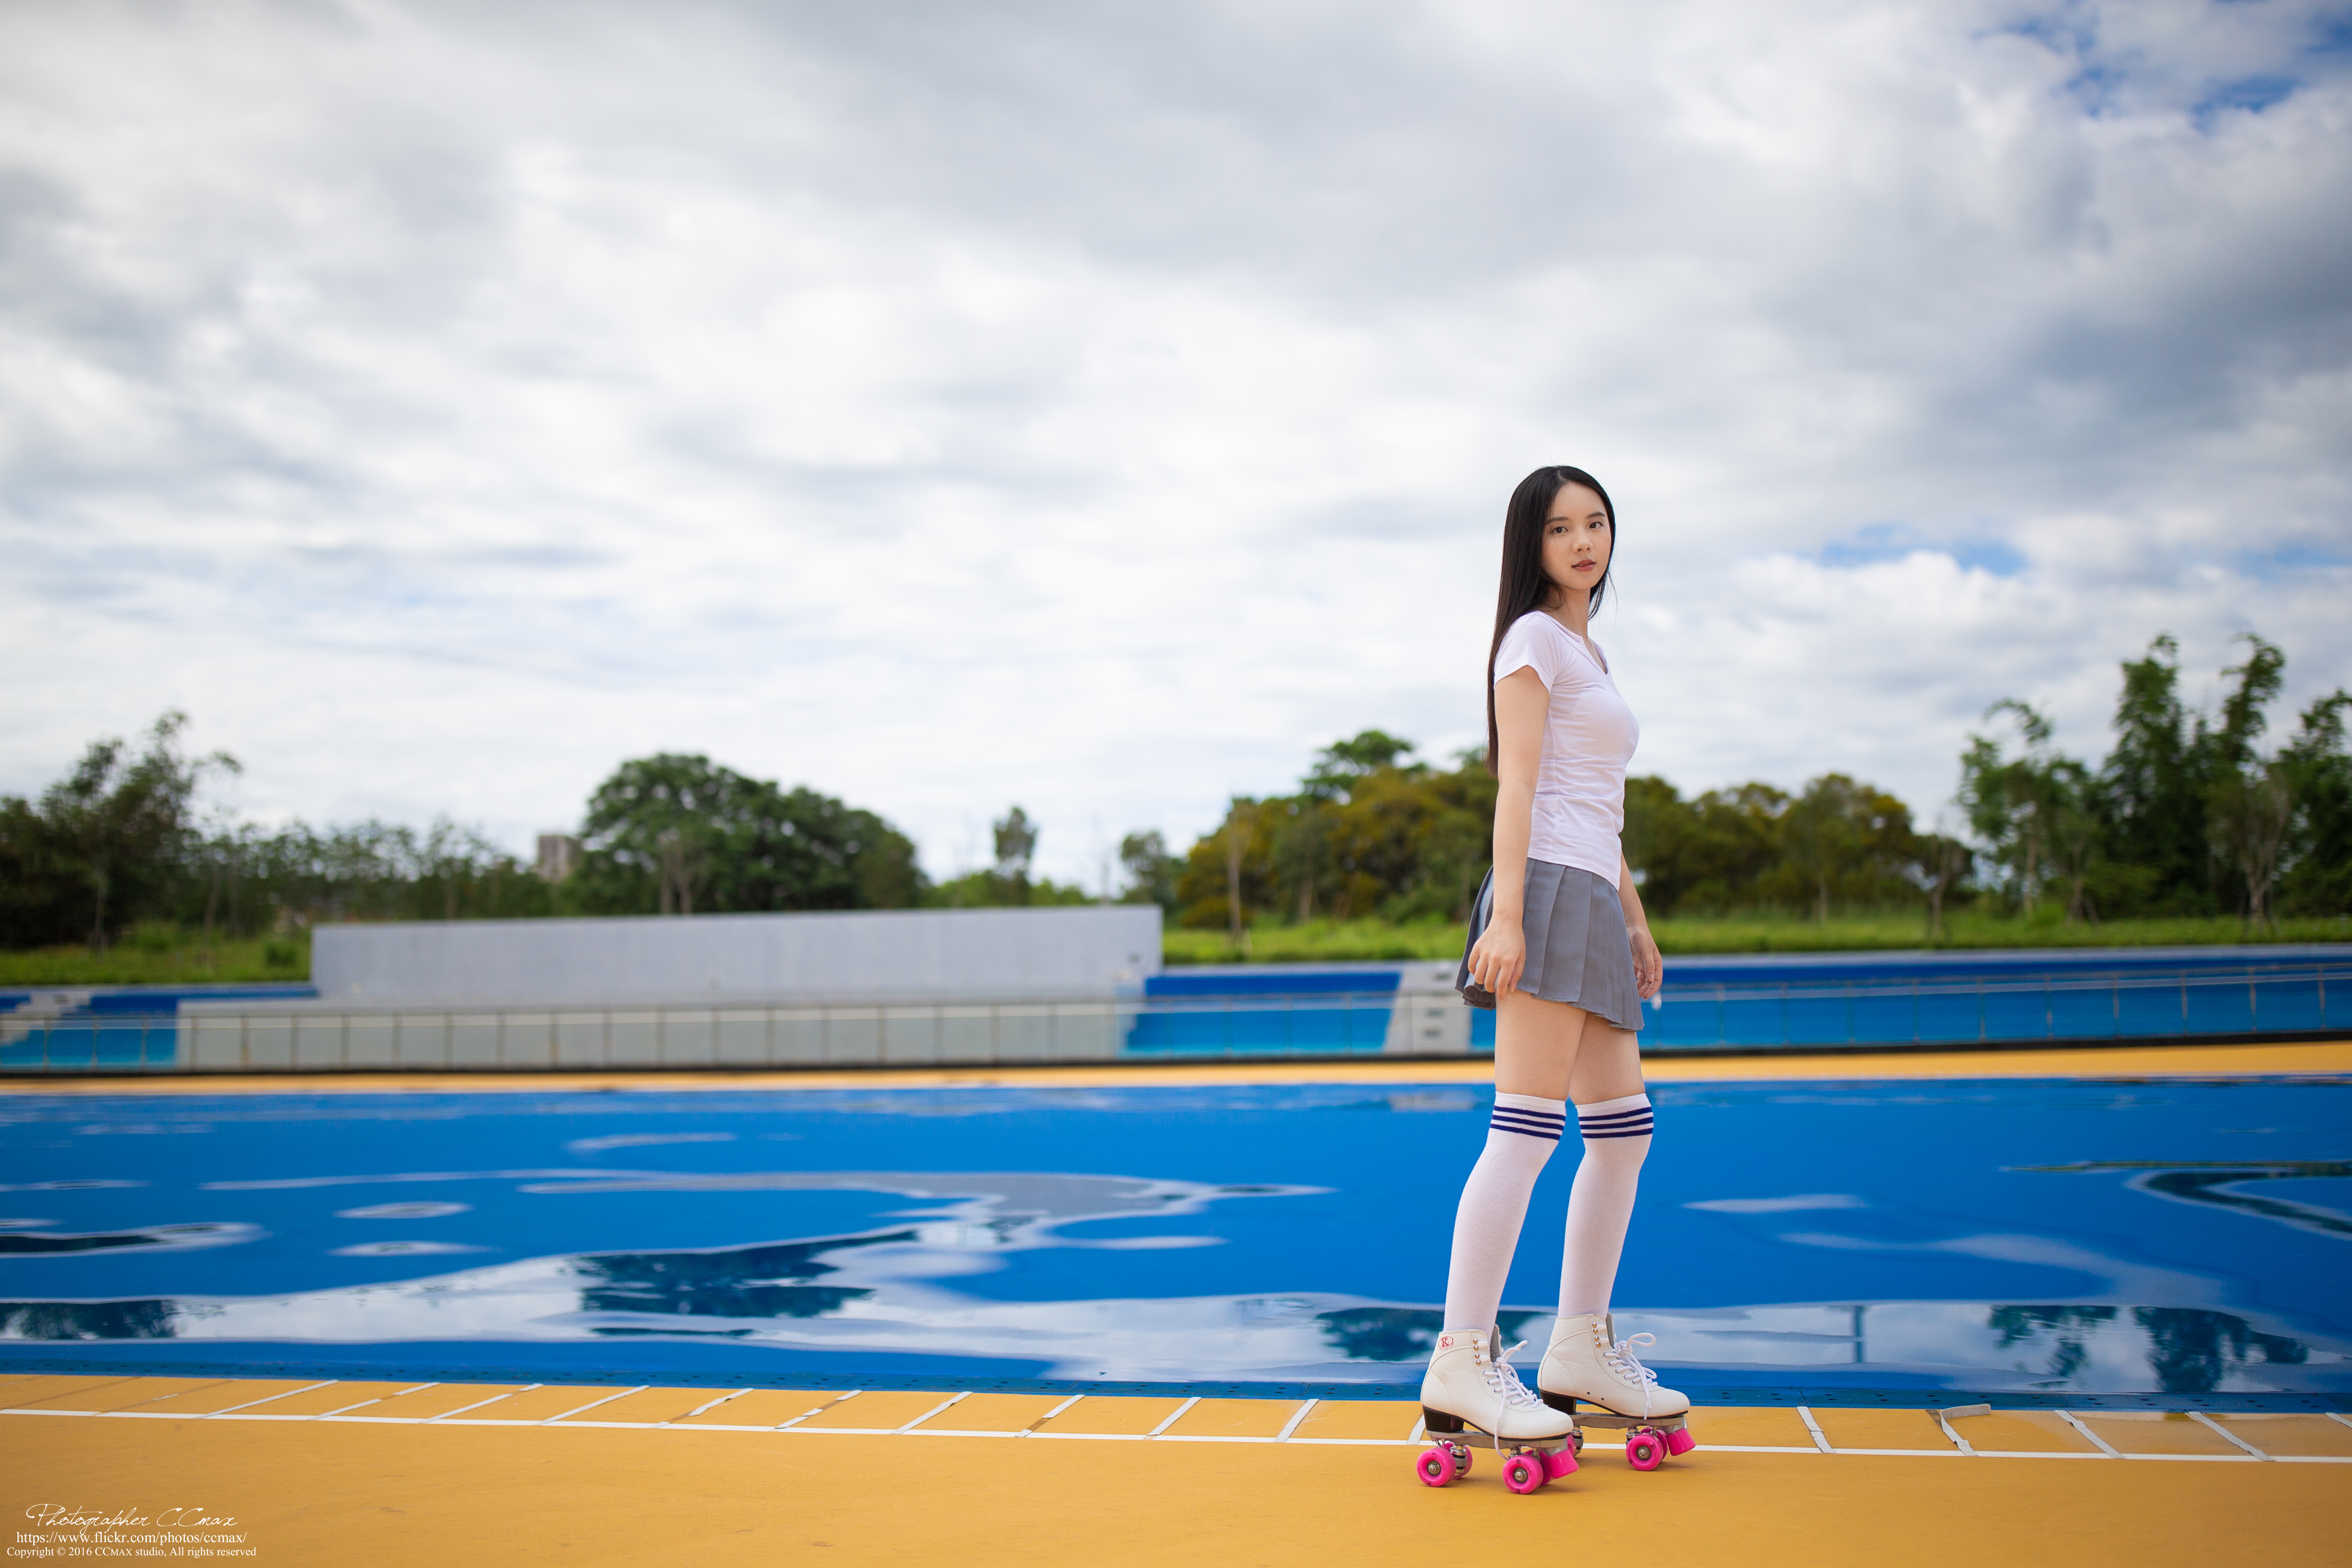 People 5184x3456 Asian model women long hair brunette roller skates skirt shirt school uniform knee high socks